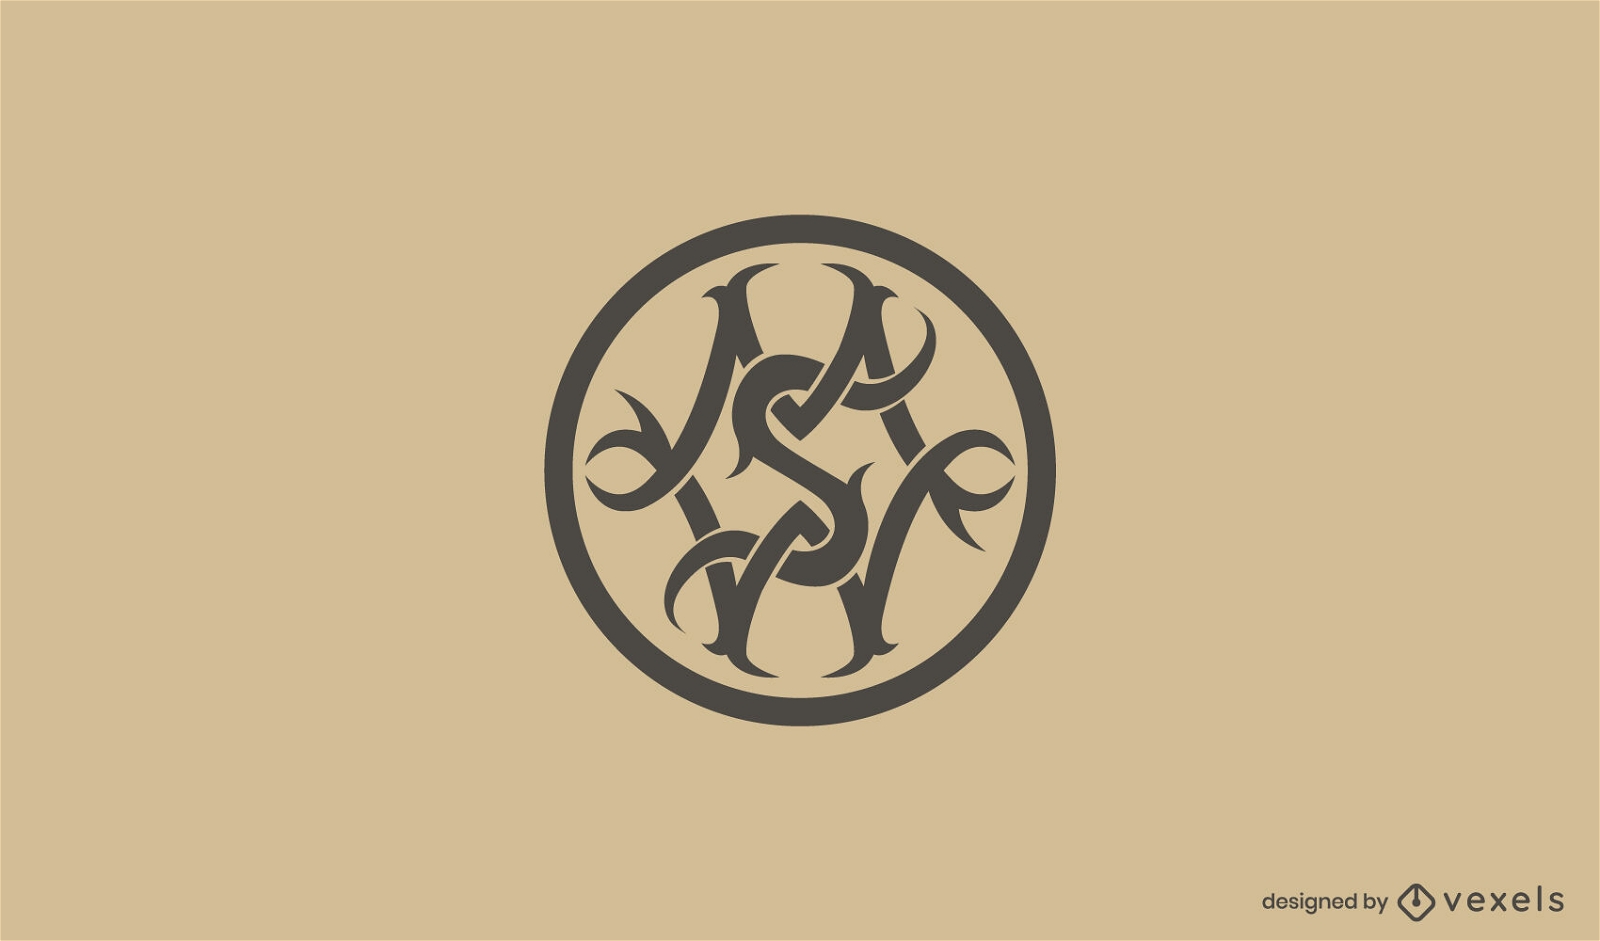 MSW keltisches Design f?r Logo-Vorlage